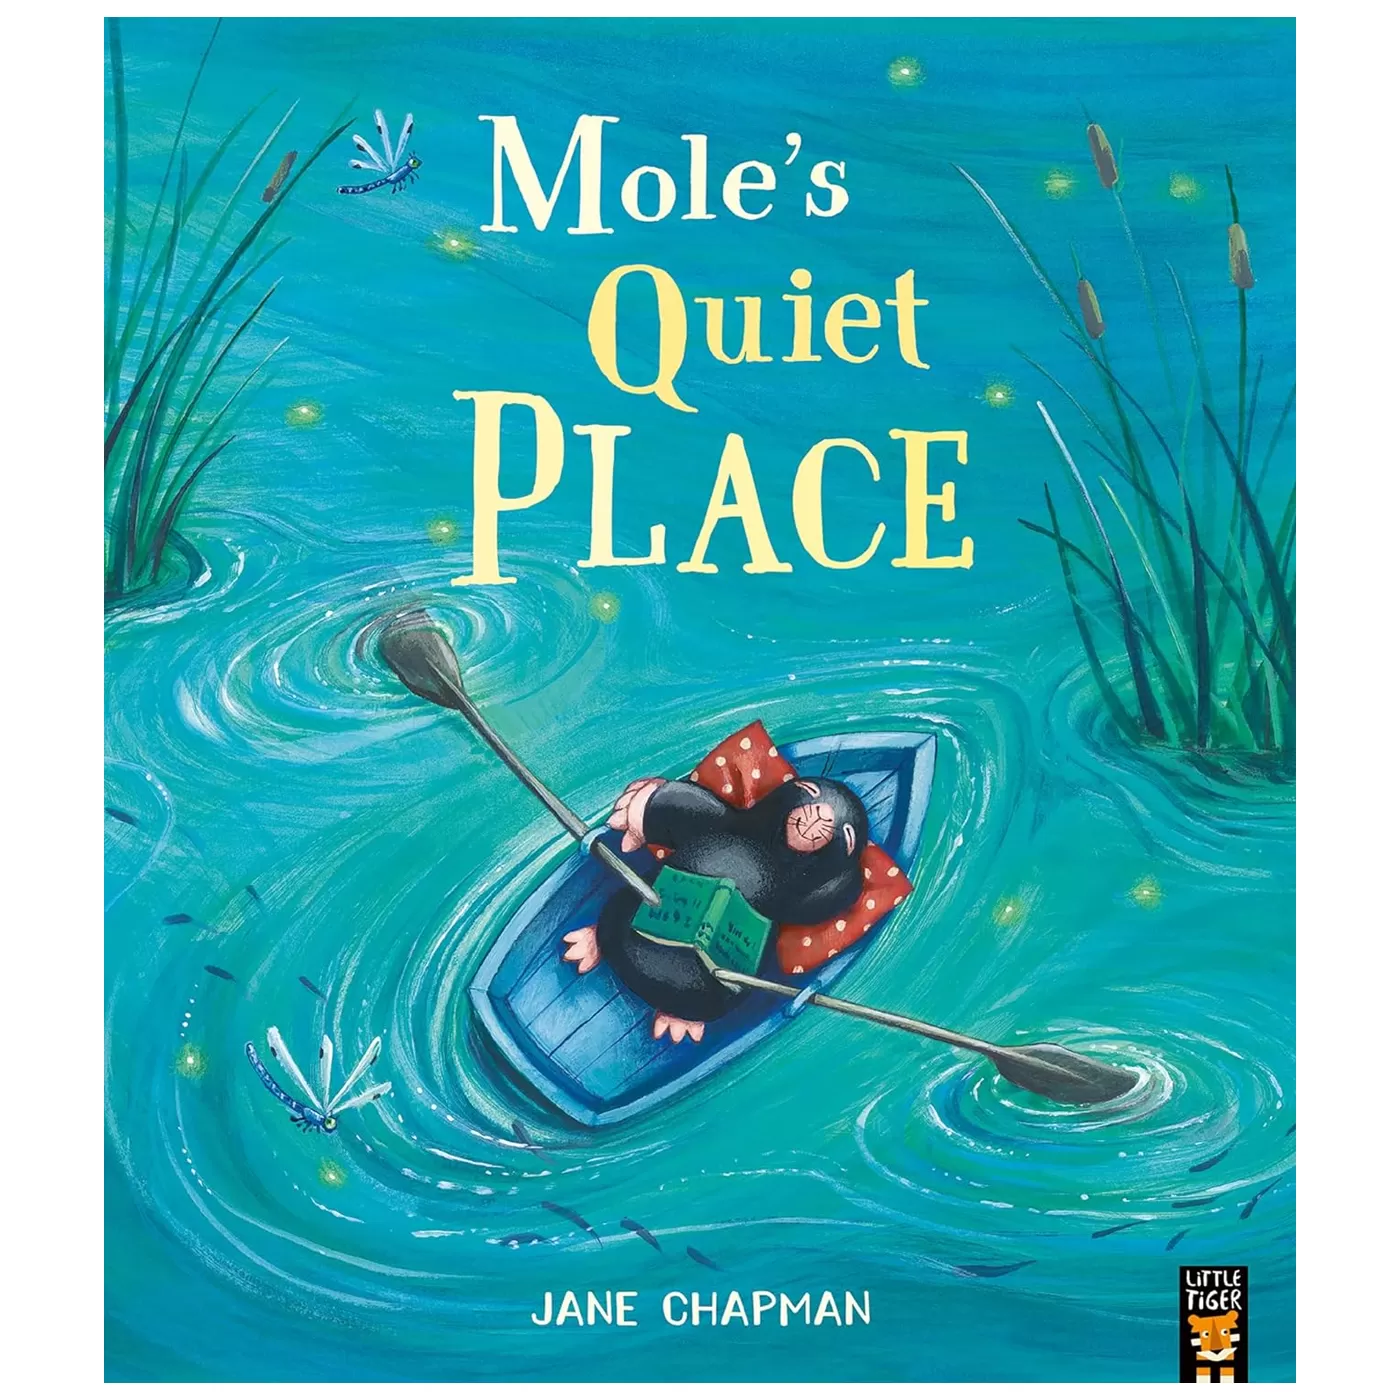  Mole's Quiet Place